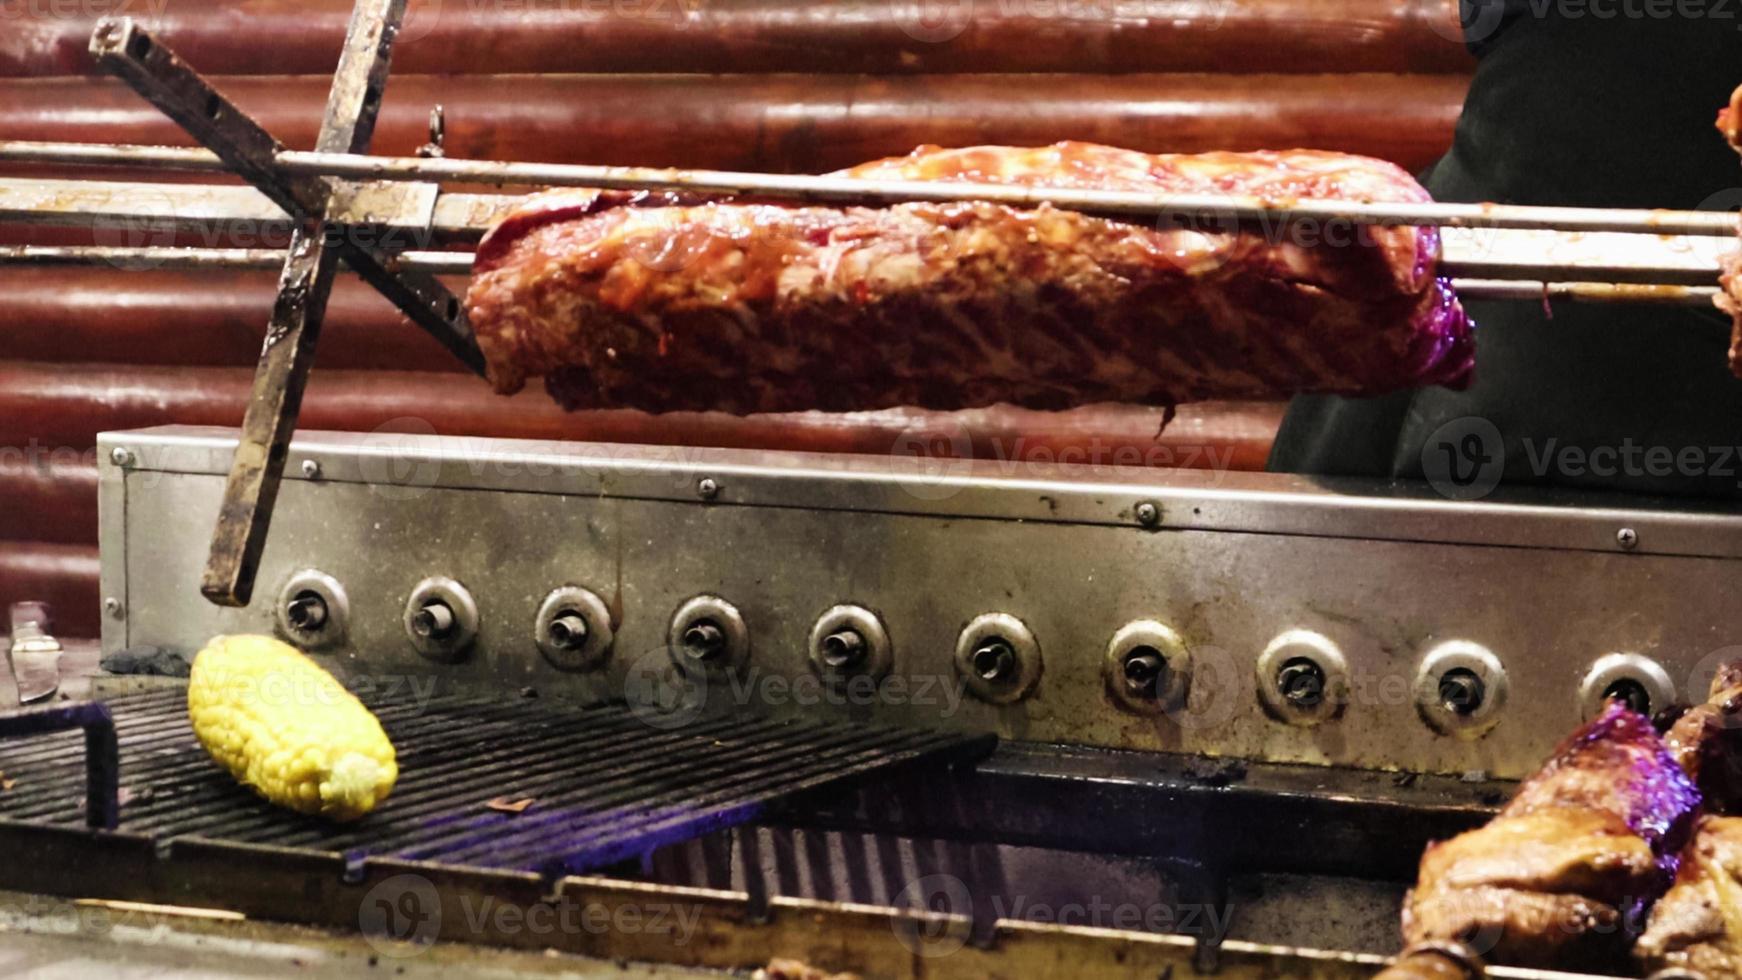 la viande des côtes tourne sur le gril du restaurant. un cuisinier en gants prépare une nouvelle portion sur le barbecue. nourriture grillée. le bœuf ou le porc est cuit jusqu'à ce qu'il soit croustillant. un plat populaire photo